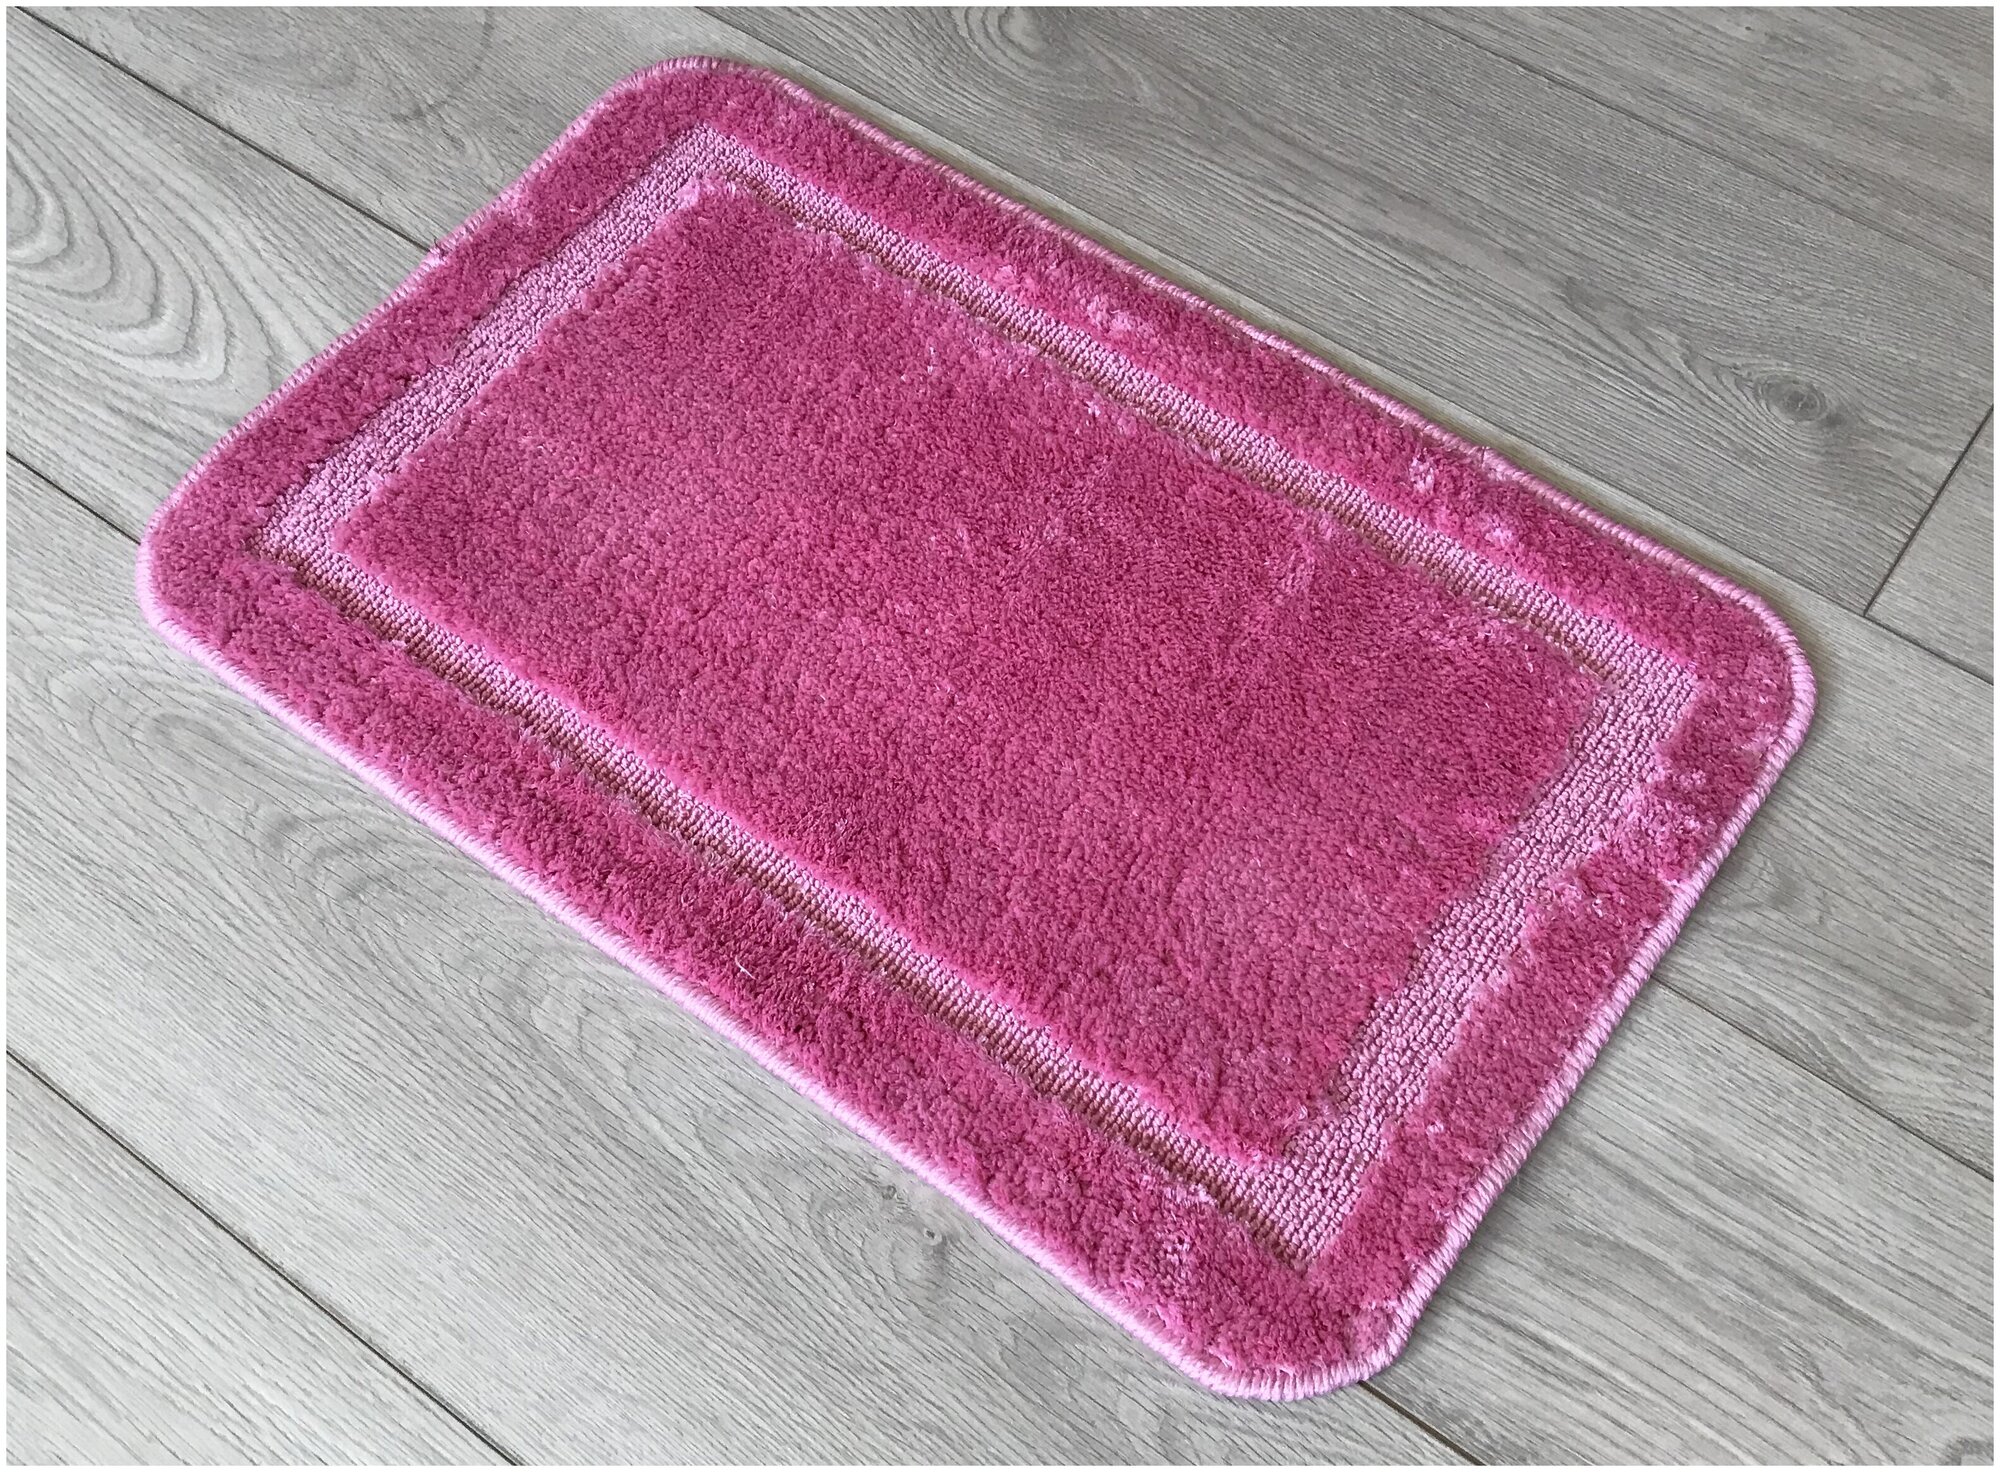 Пушистый коврик на резиновой основе 50х80 см розовый, с бордюром Микрофайбер / 11676-005